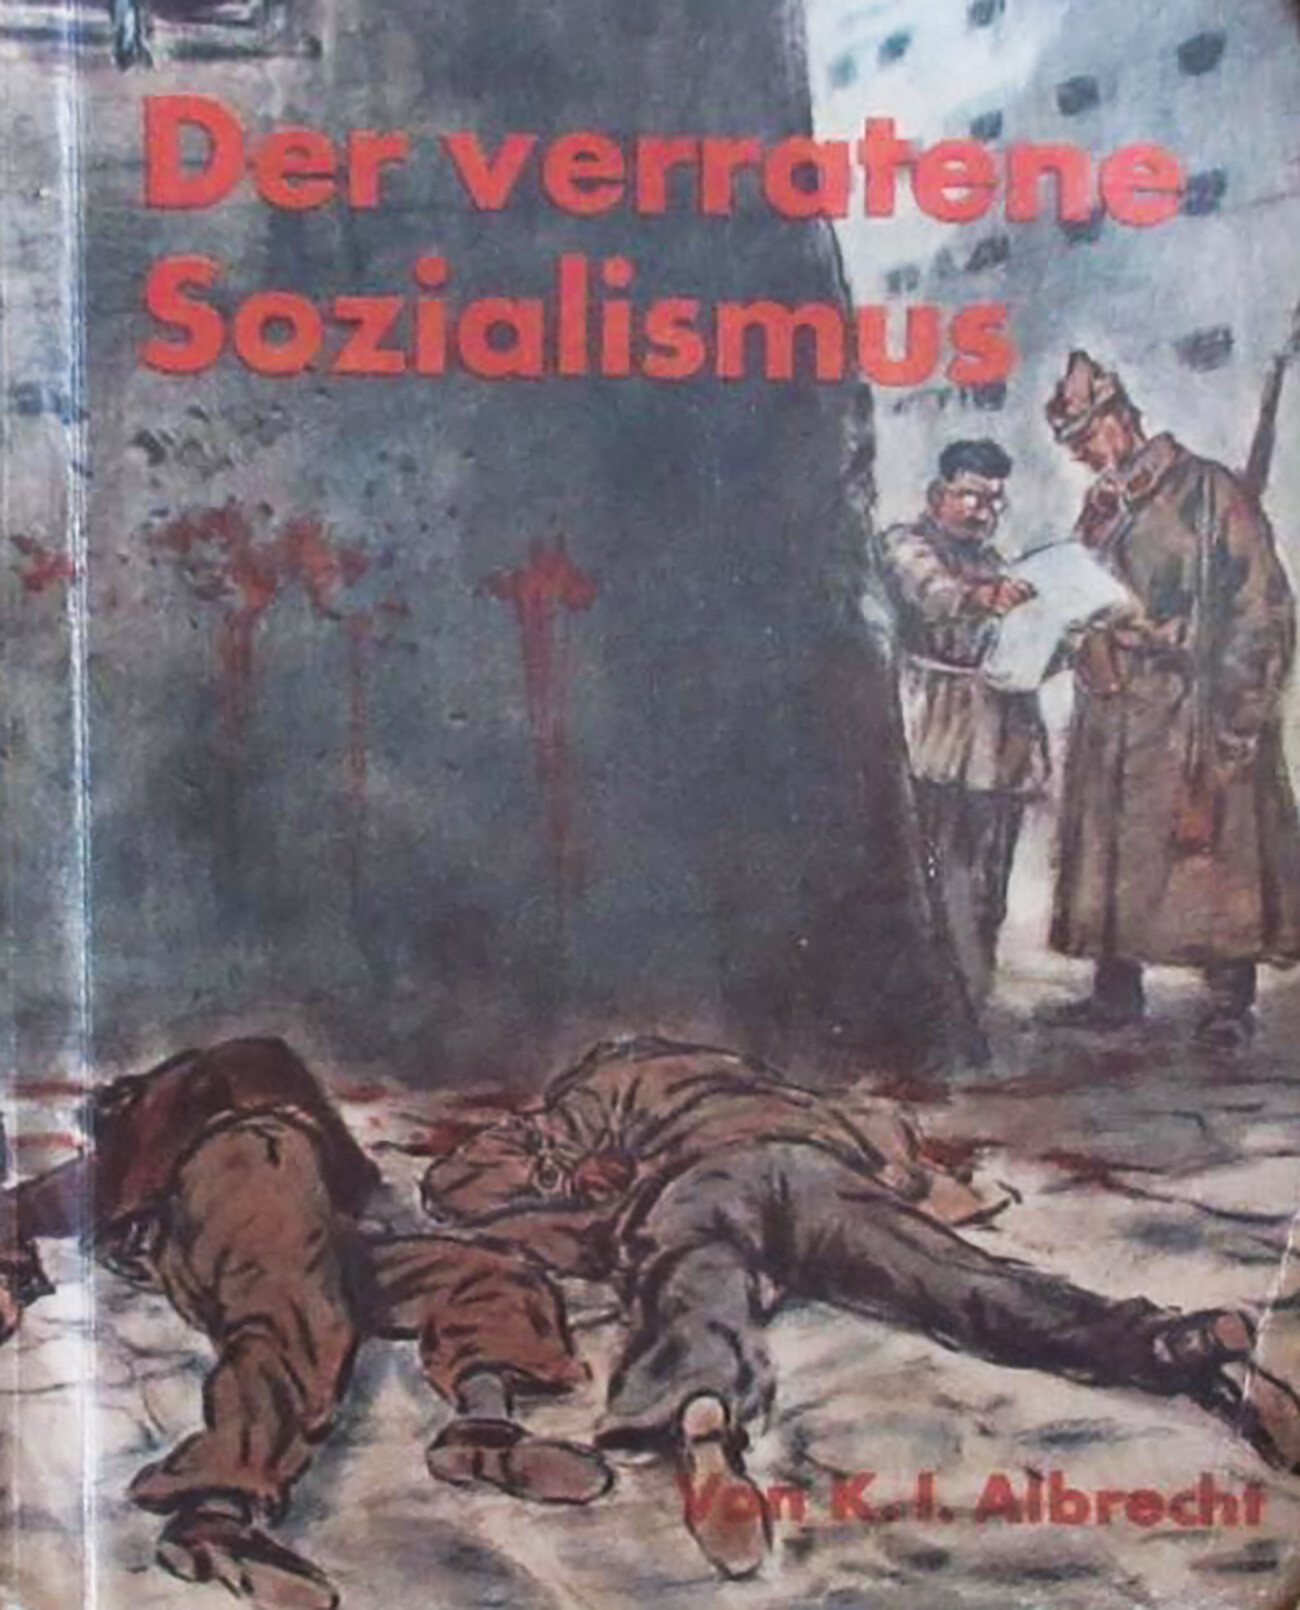 Naslovnica avtobiografske knjige K. I. Albrechta, ki jo je uporabljala nacistična propaganda